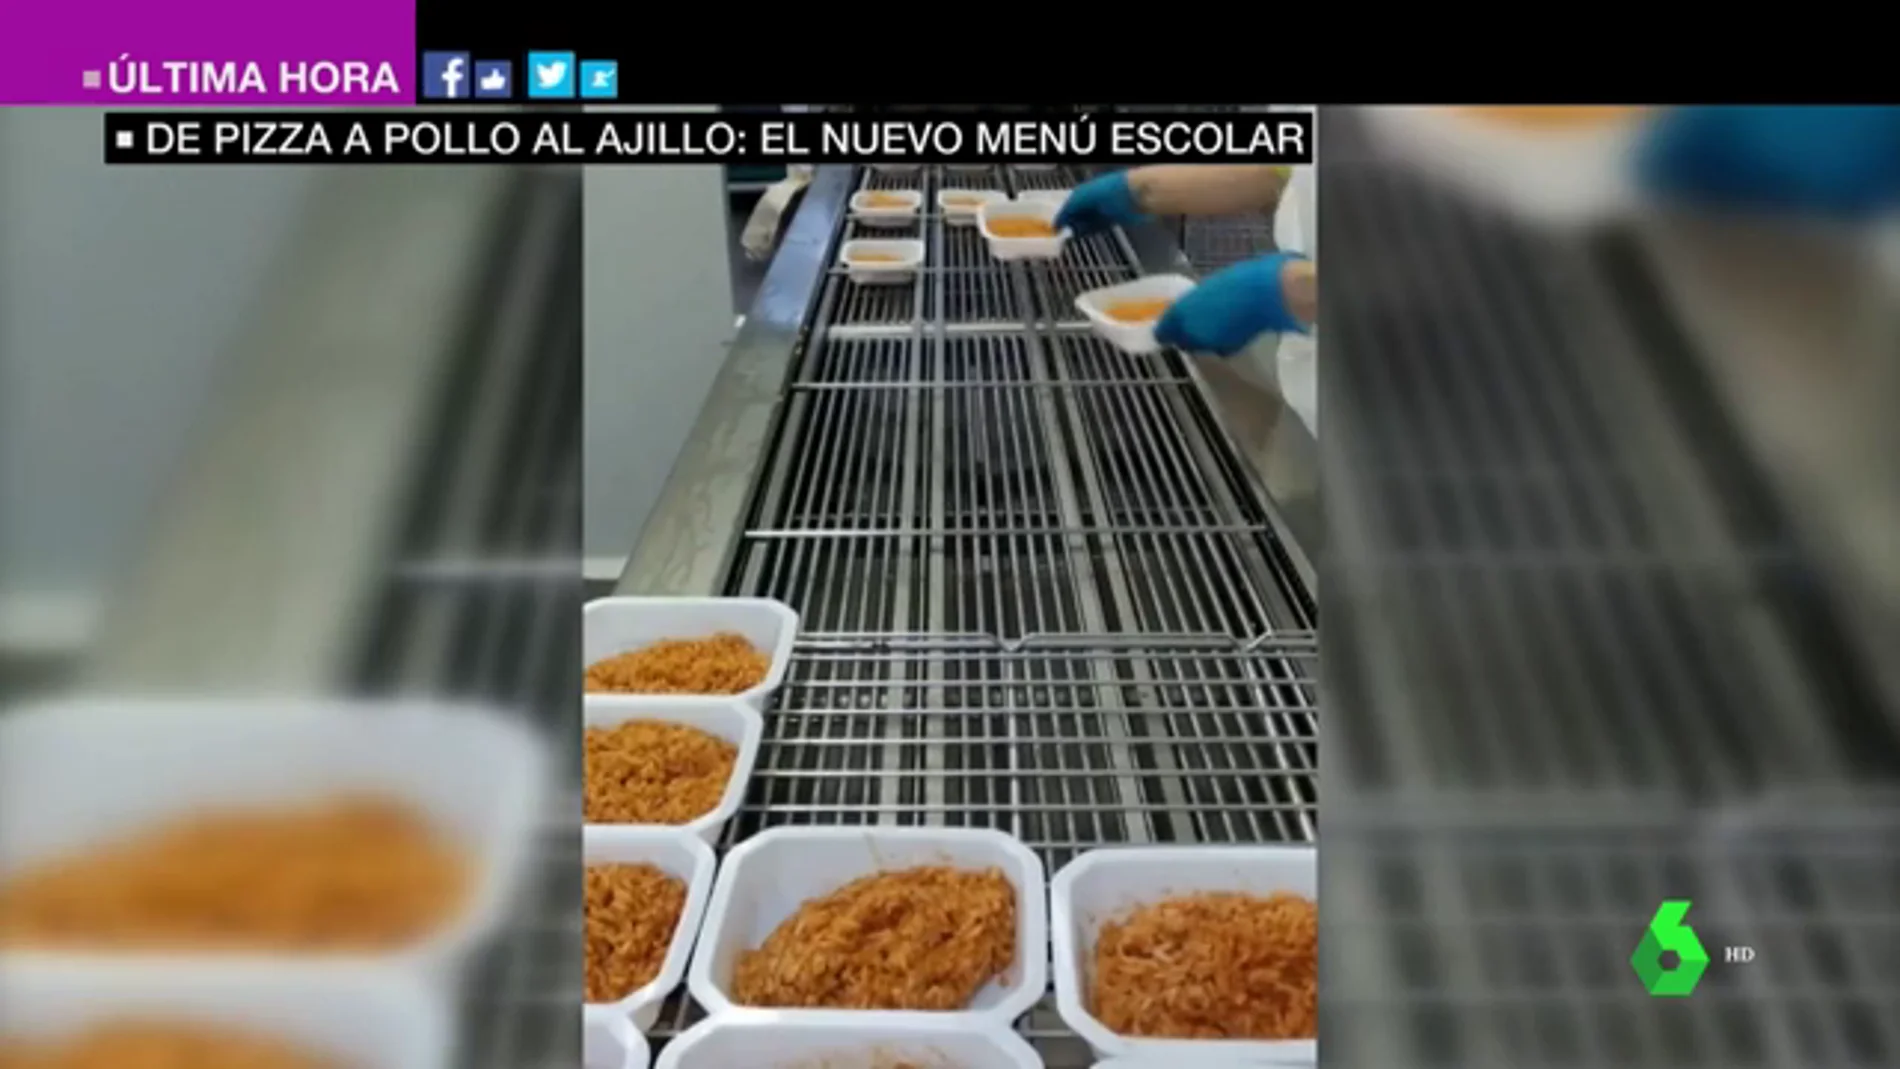 Los nuevos menús escolares que reparte la Comunidad de Madrid